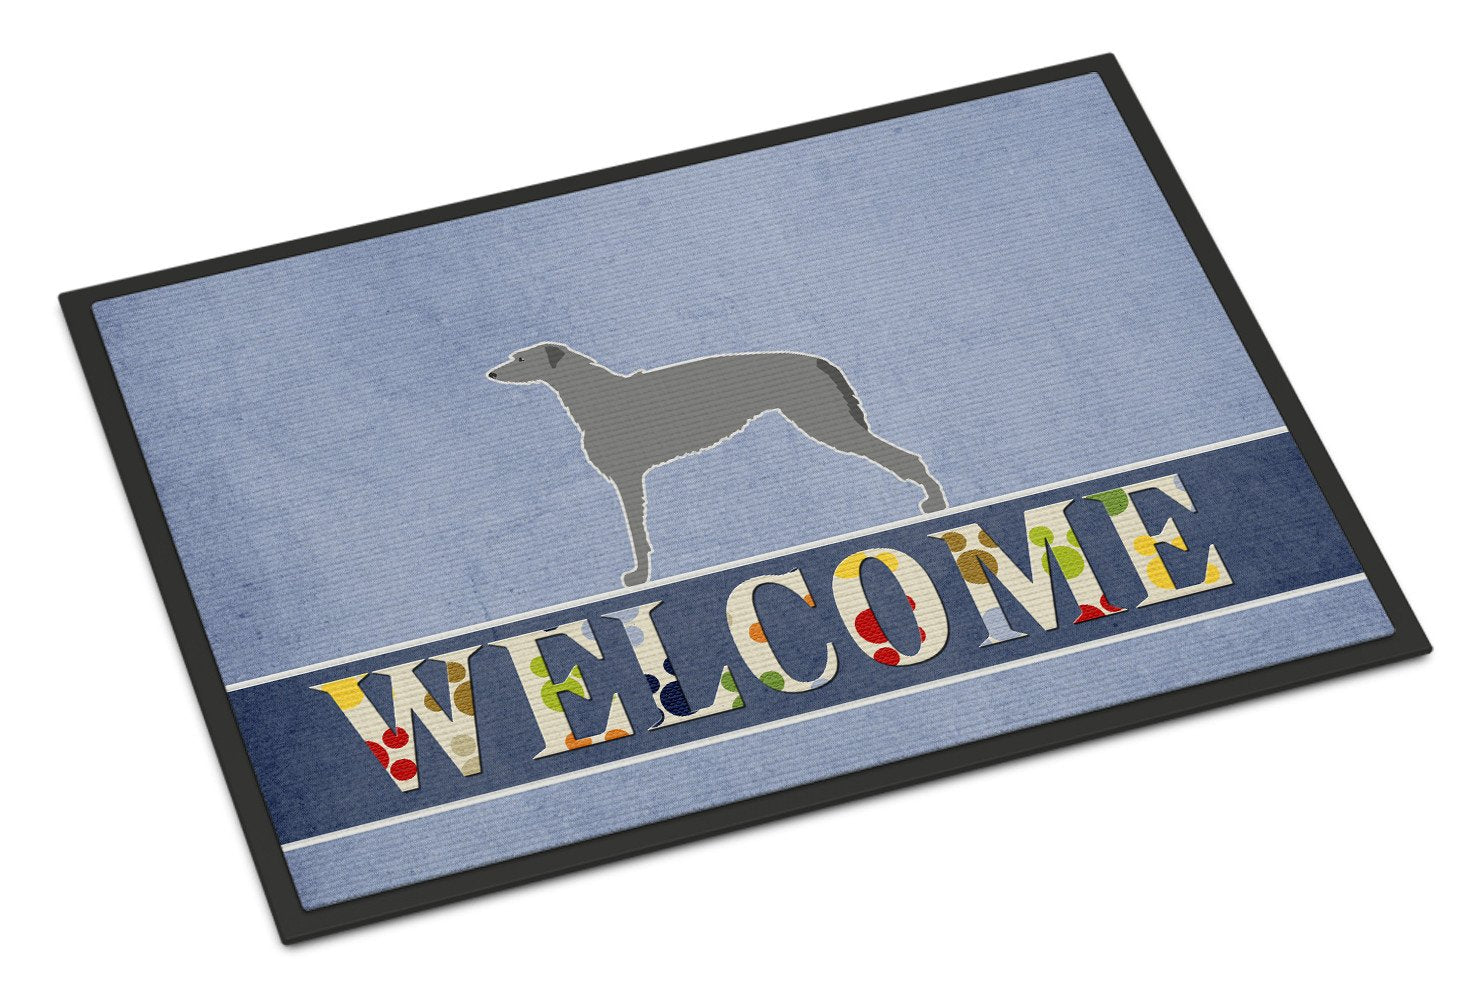 Scottish Deerhound Welcome Indoor or Outdoor Mat 24x36 BB5500JMAT by Caroline's Treasures